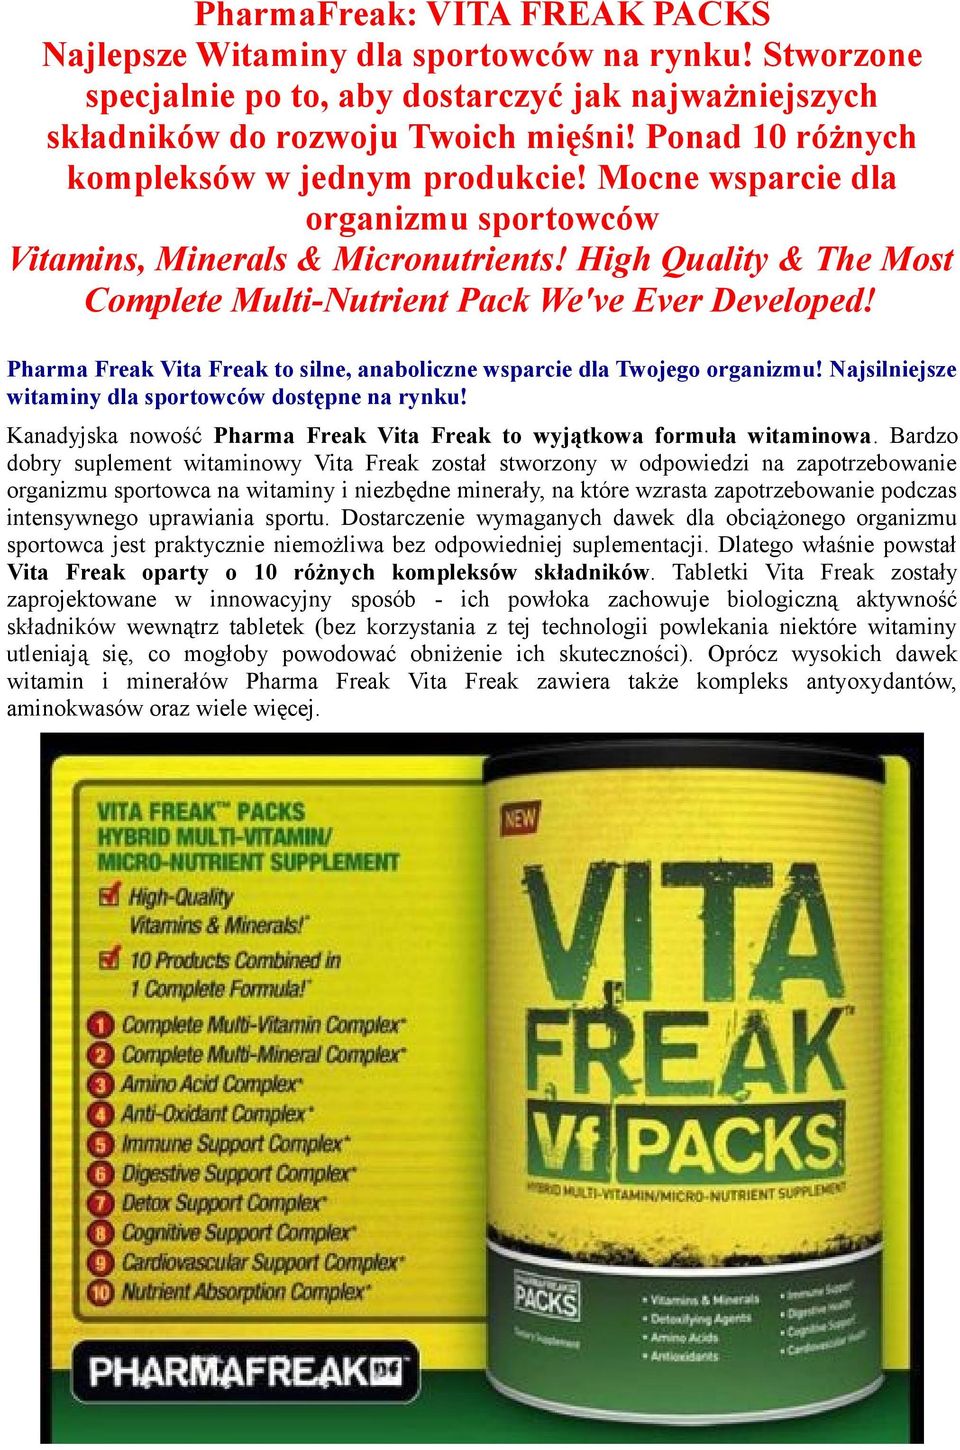 Pharma Freak Vita Freak to silne, anaboliczne wsparcie dla Twojego organizmu! Najsilniejsze witaminy dla sportowców dostępne na rynku!